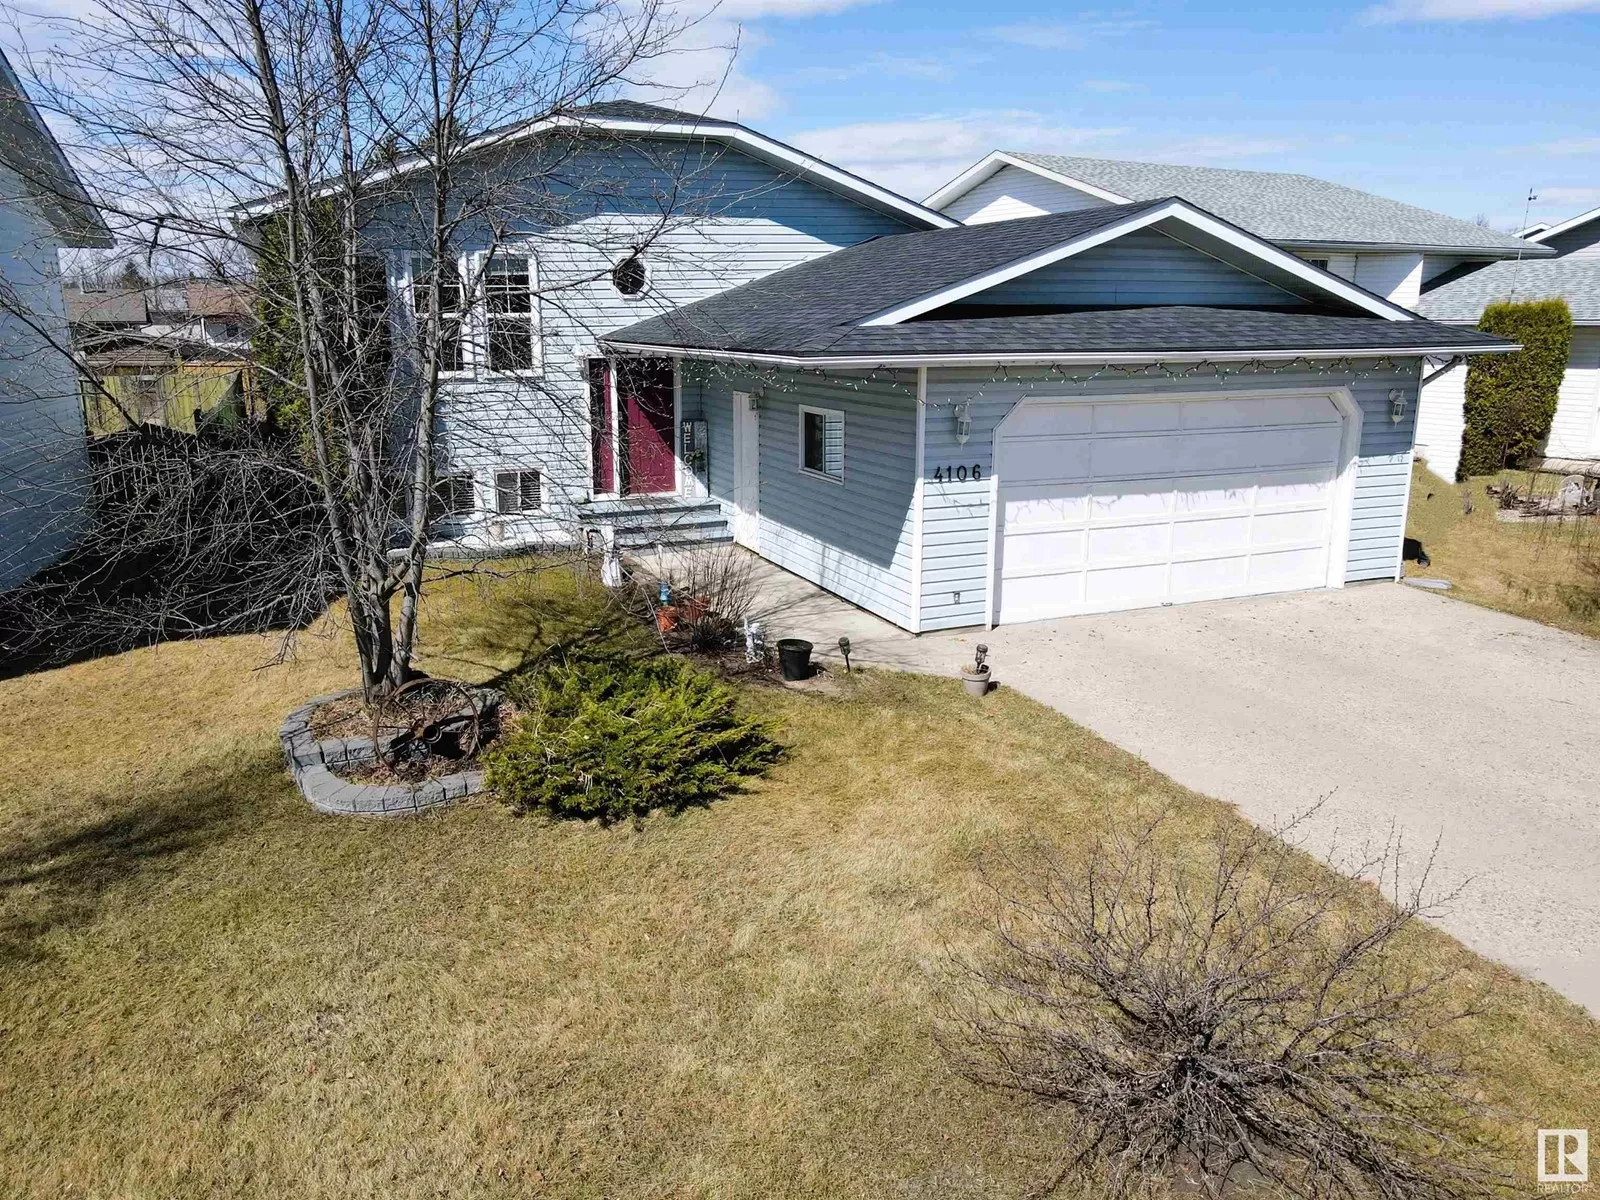 House for rent: 4106 42 St, Bonnyville Town, Alberta T9N 1S5